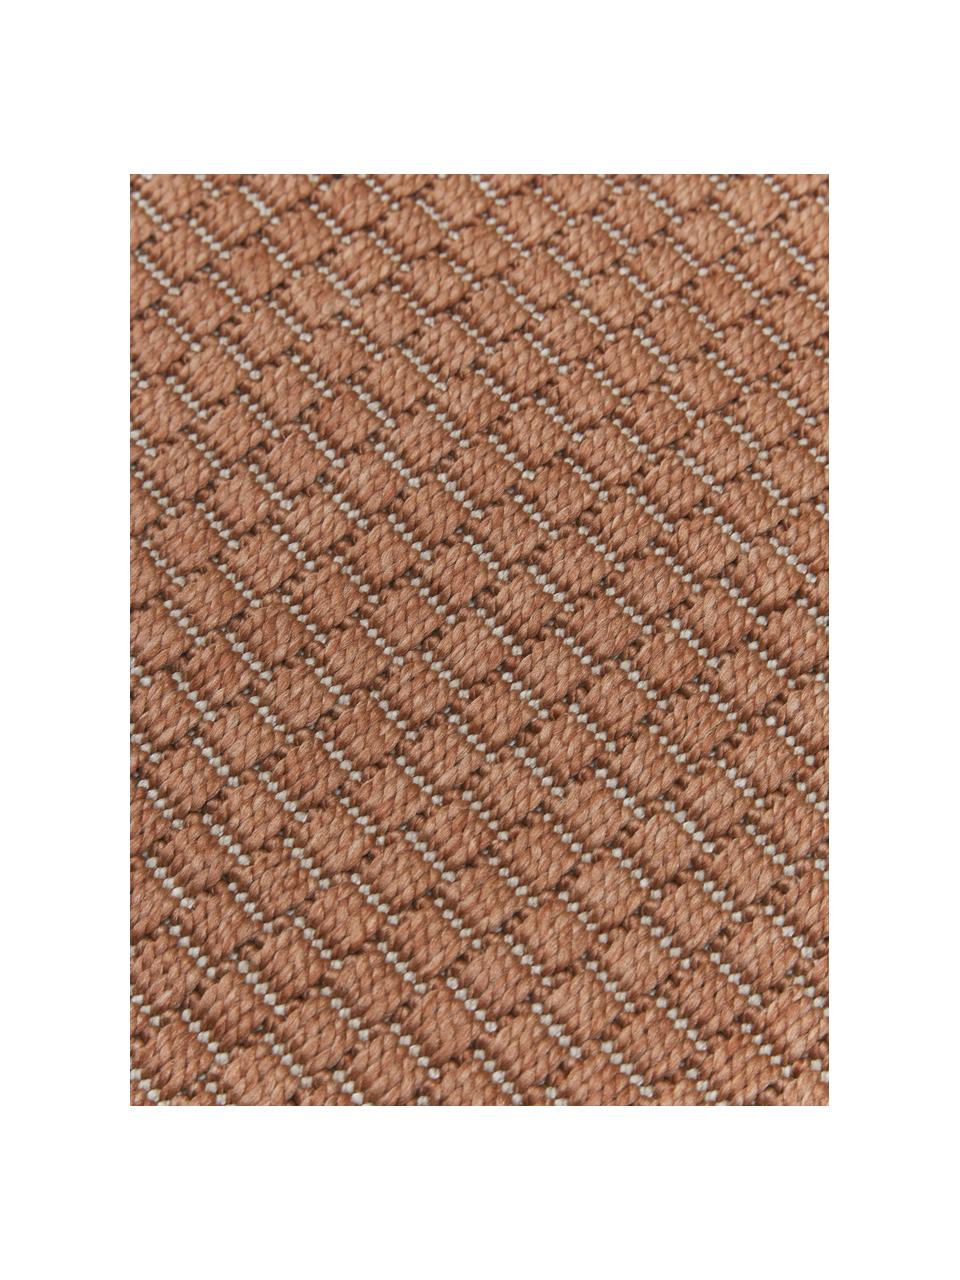 Kulatý interiérový / exteriérový koberec Toronto, 100 % polypropylen, Terakotová, Ø 120 cm (velikost S)